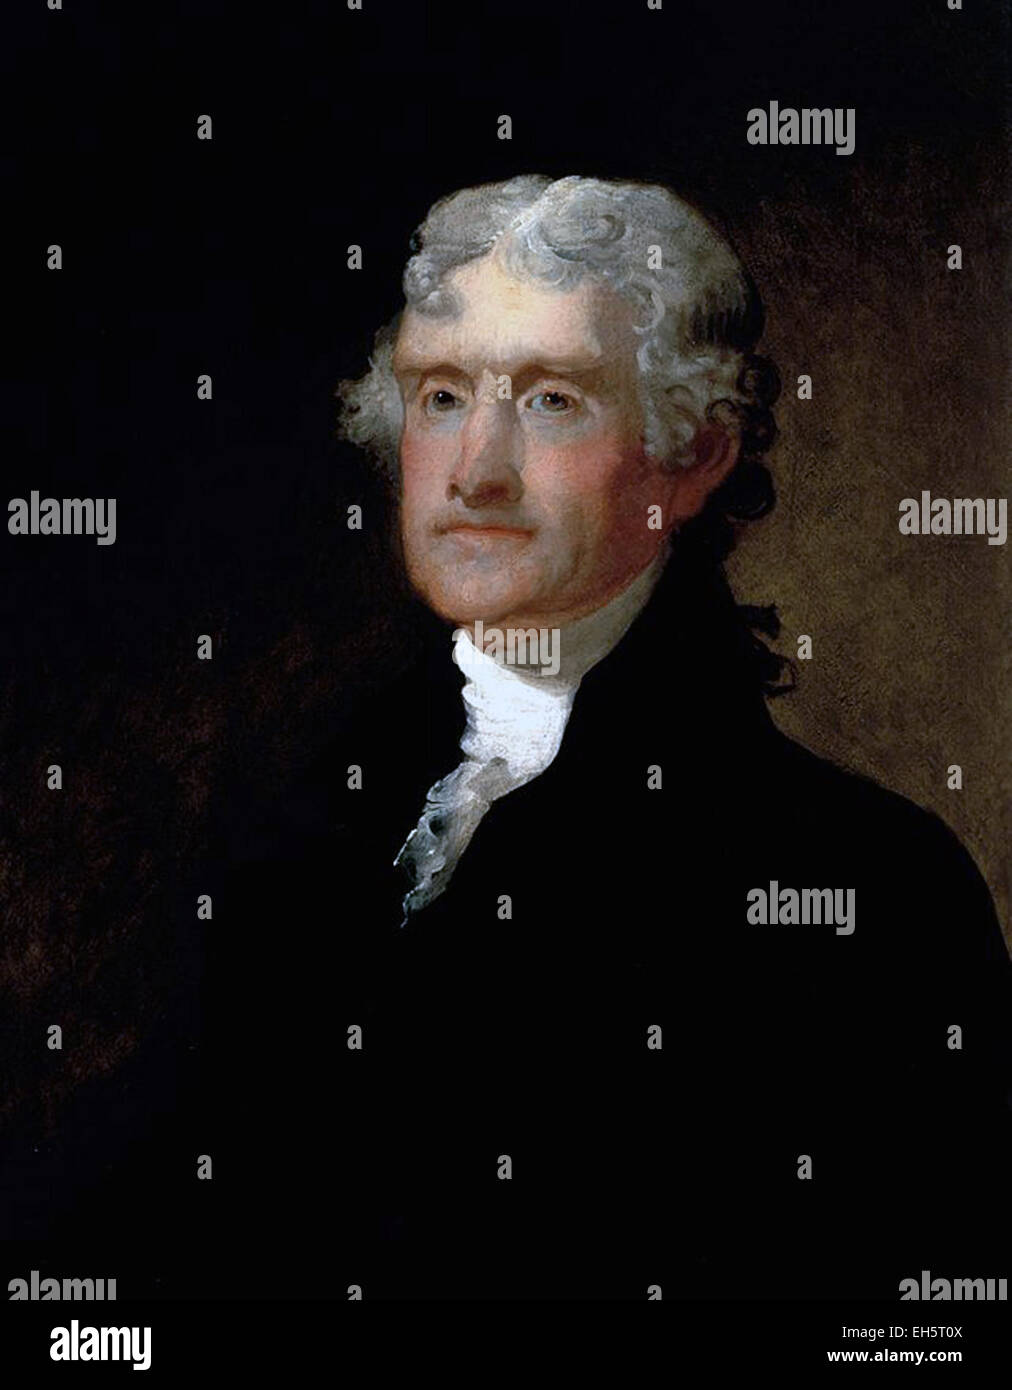 Portrait of President Thomas Jefferson by Matthew Harris Jouett in 1821. Stock Photo